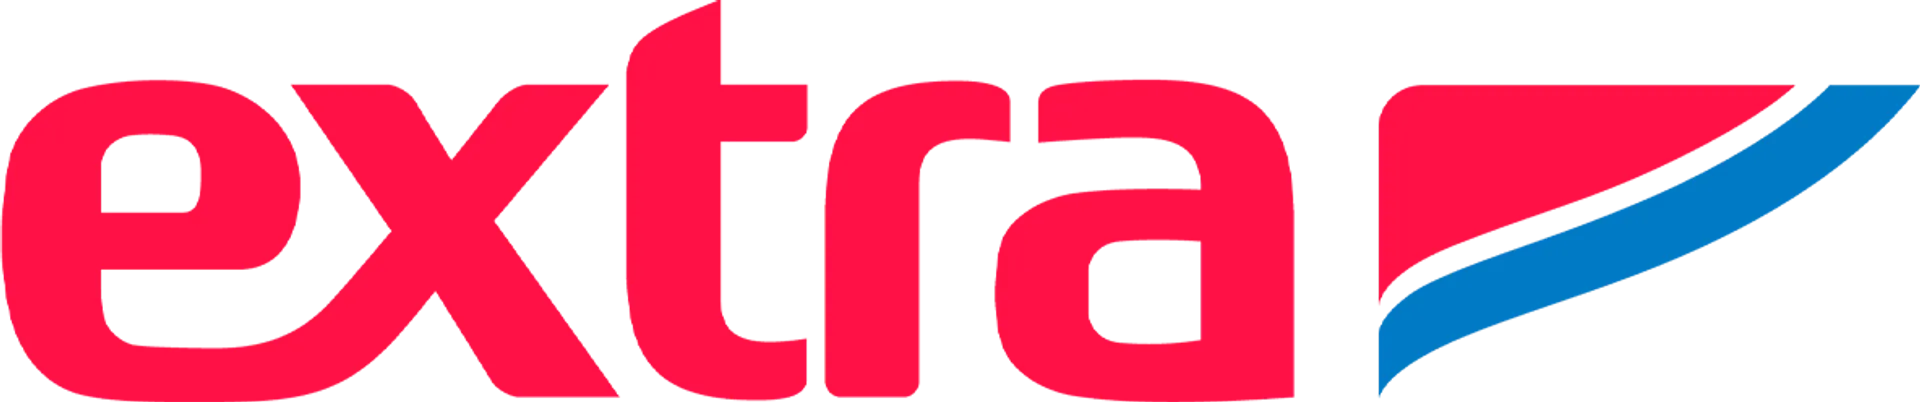 MERCADO EXTRA logo